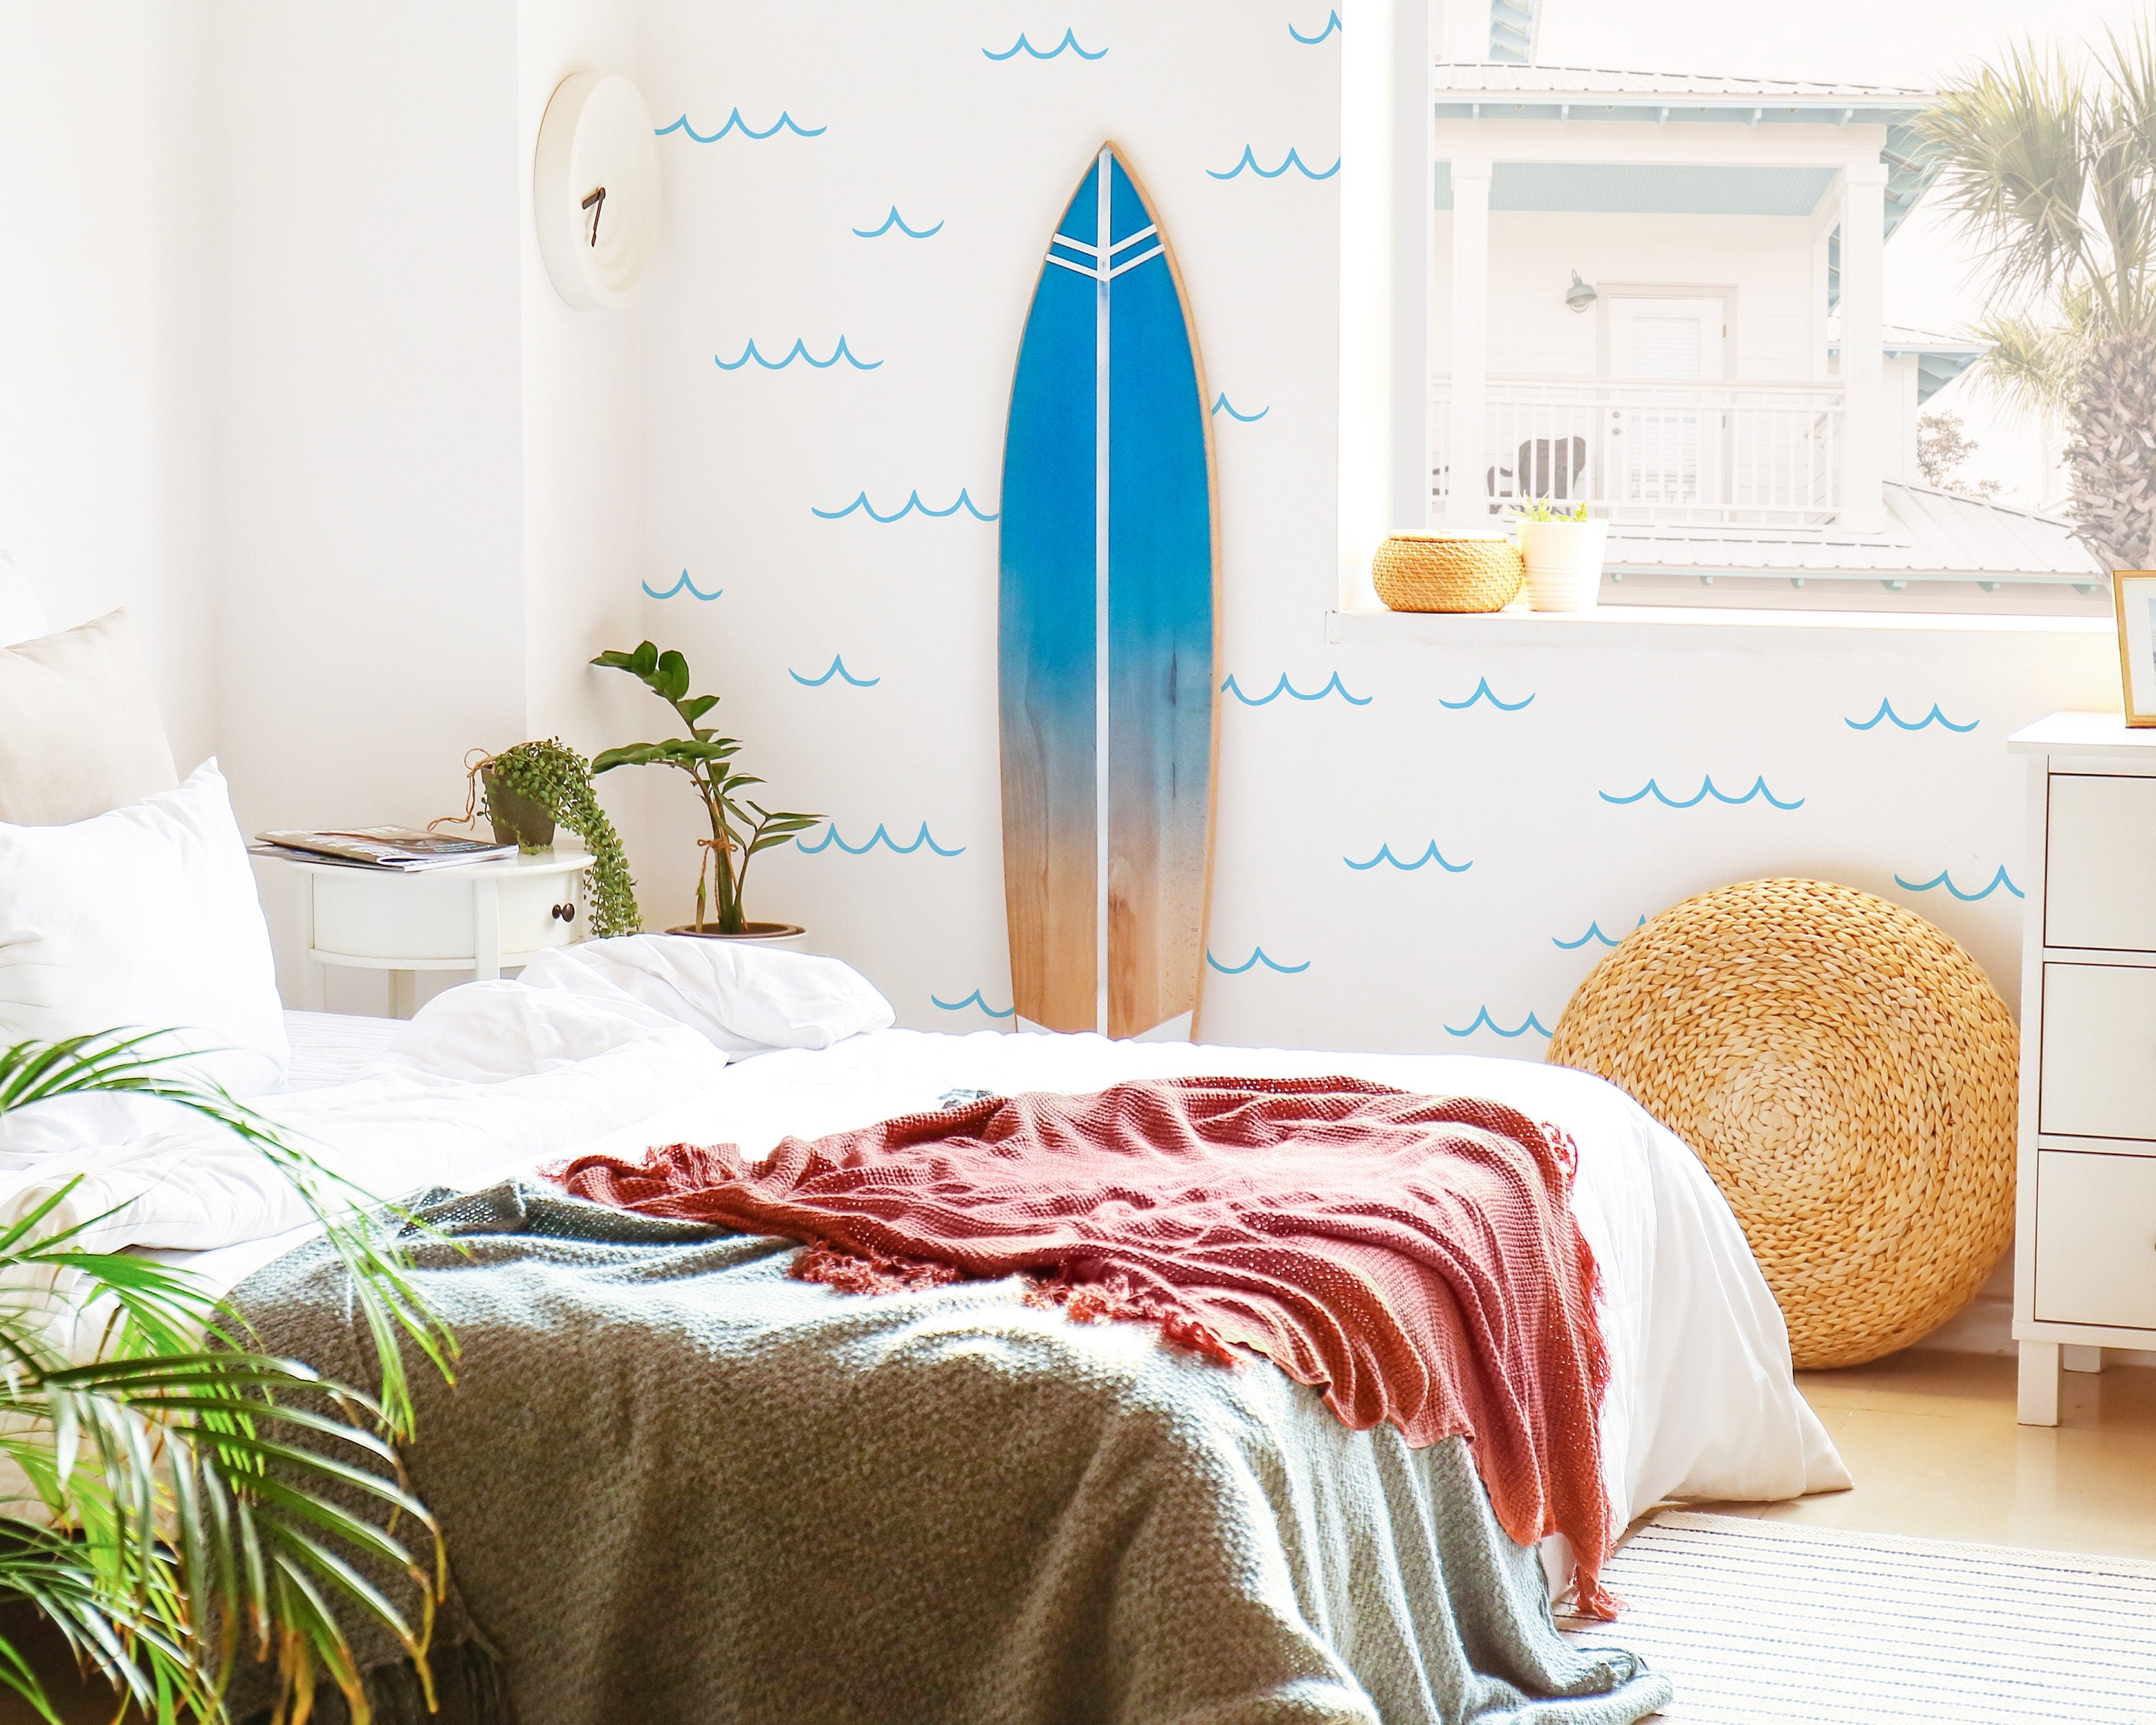 Surf's Up – Kenna Sato Designs